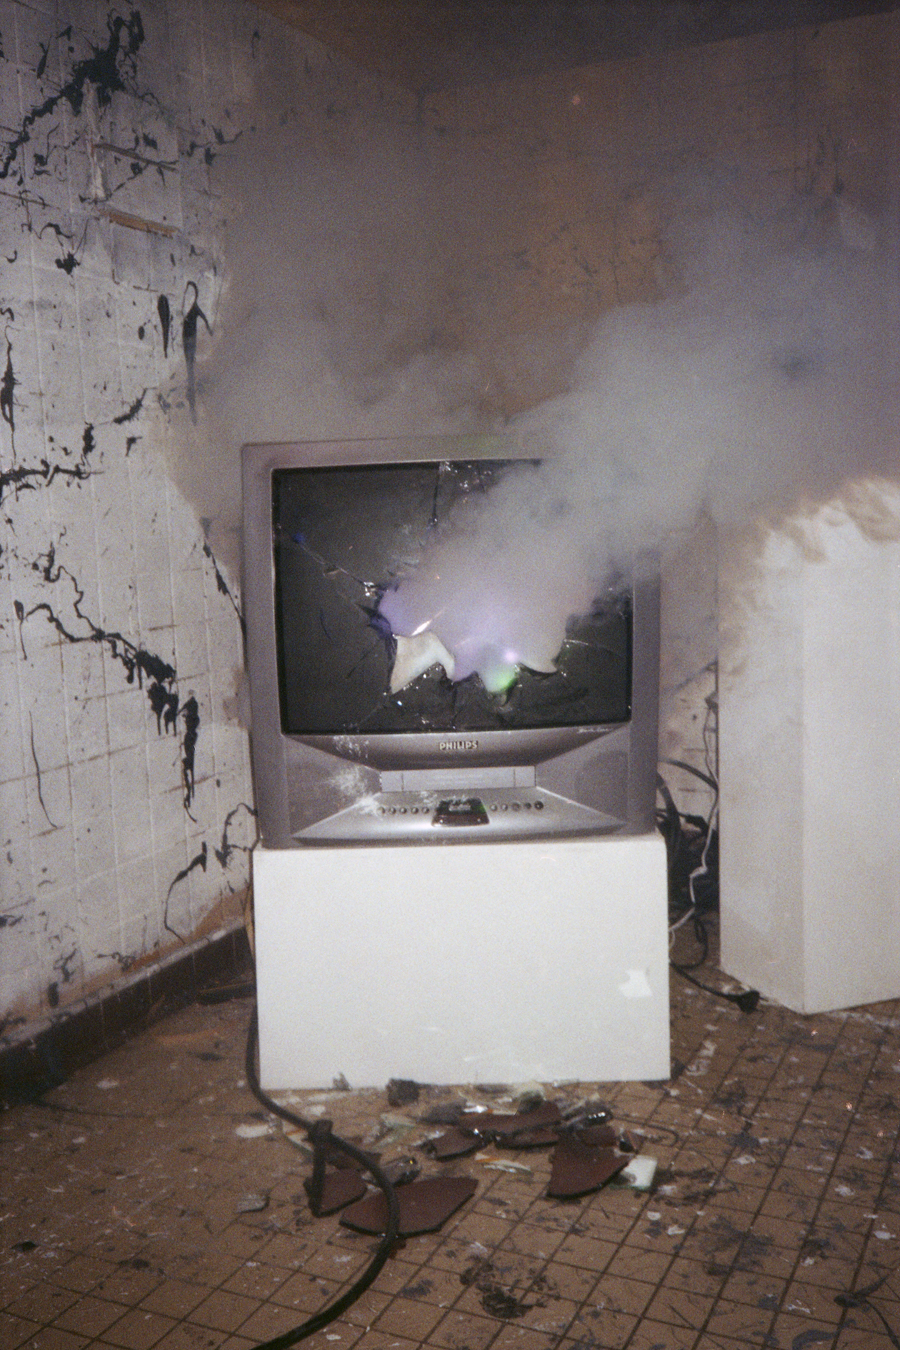 Photographie en argentique couleur d'une vieille télévision cathodique cassée où se propage de la fumée au centre.